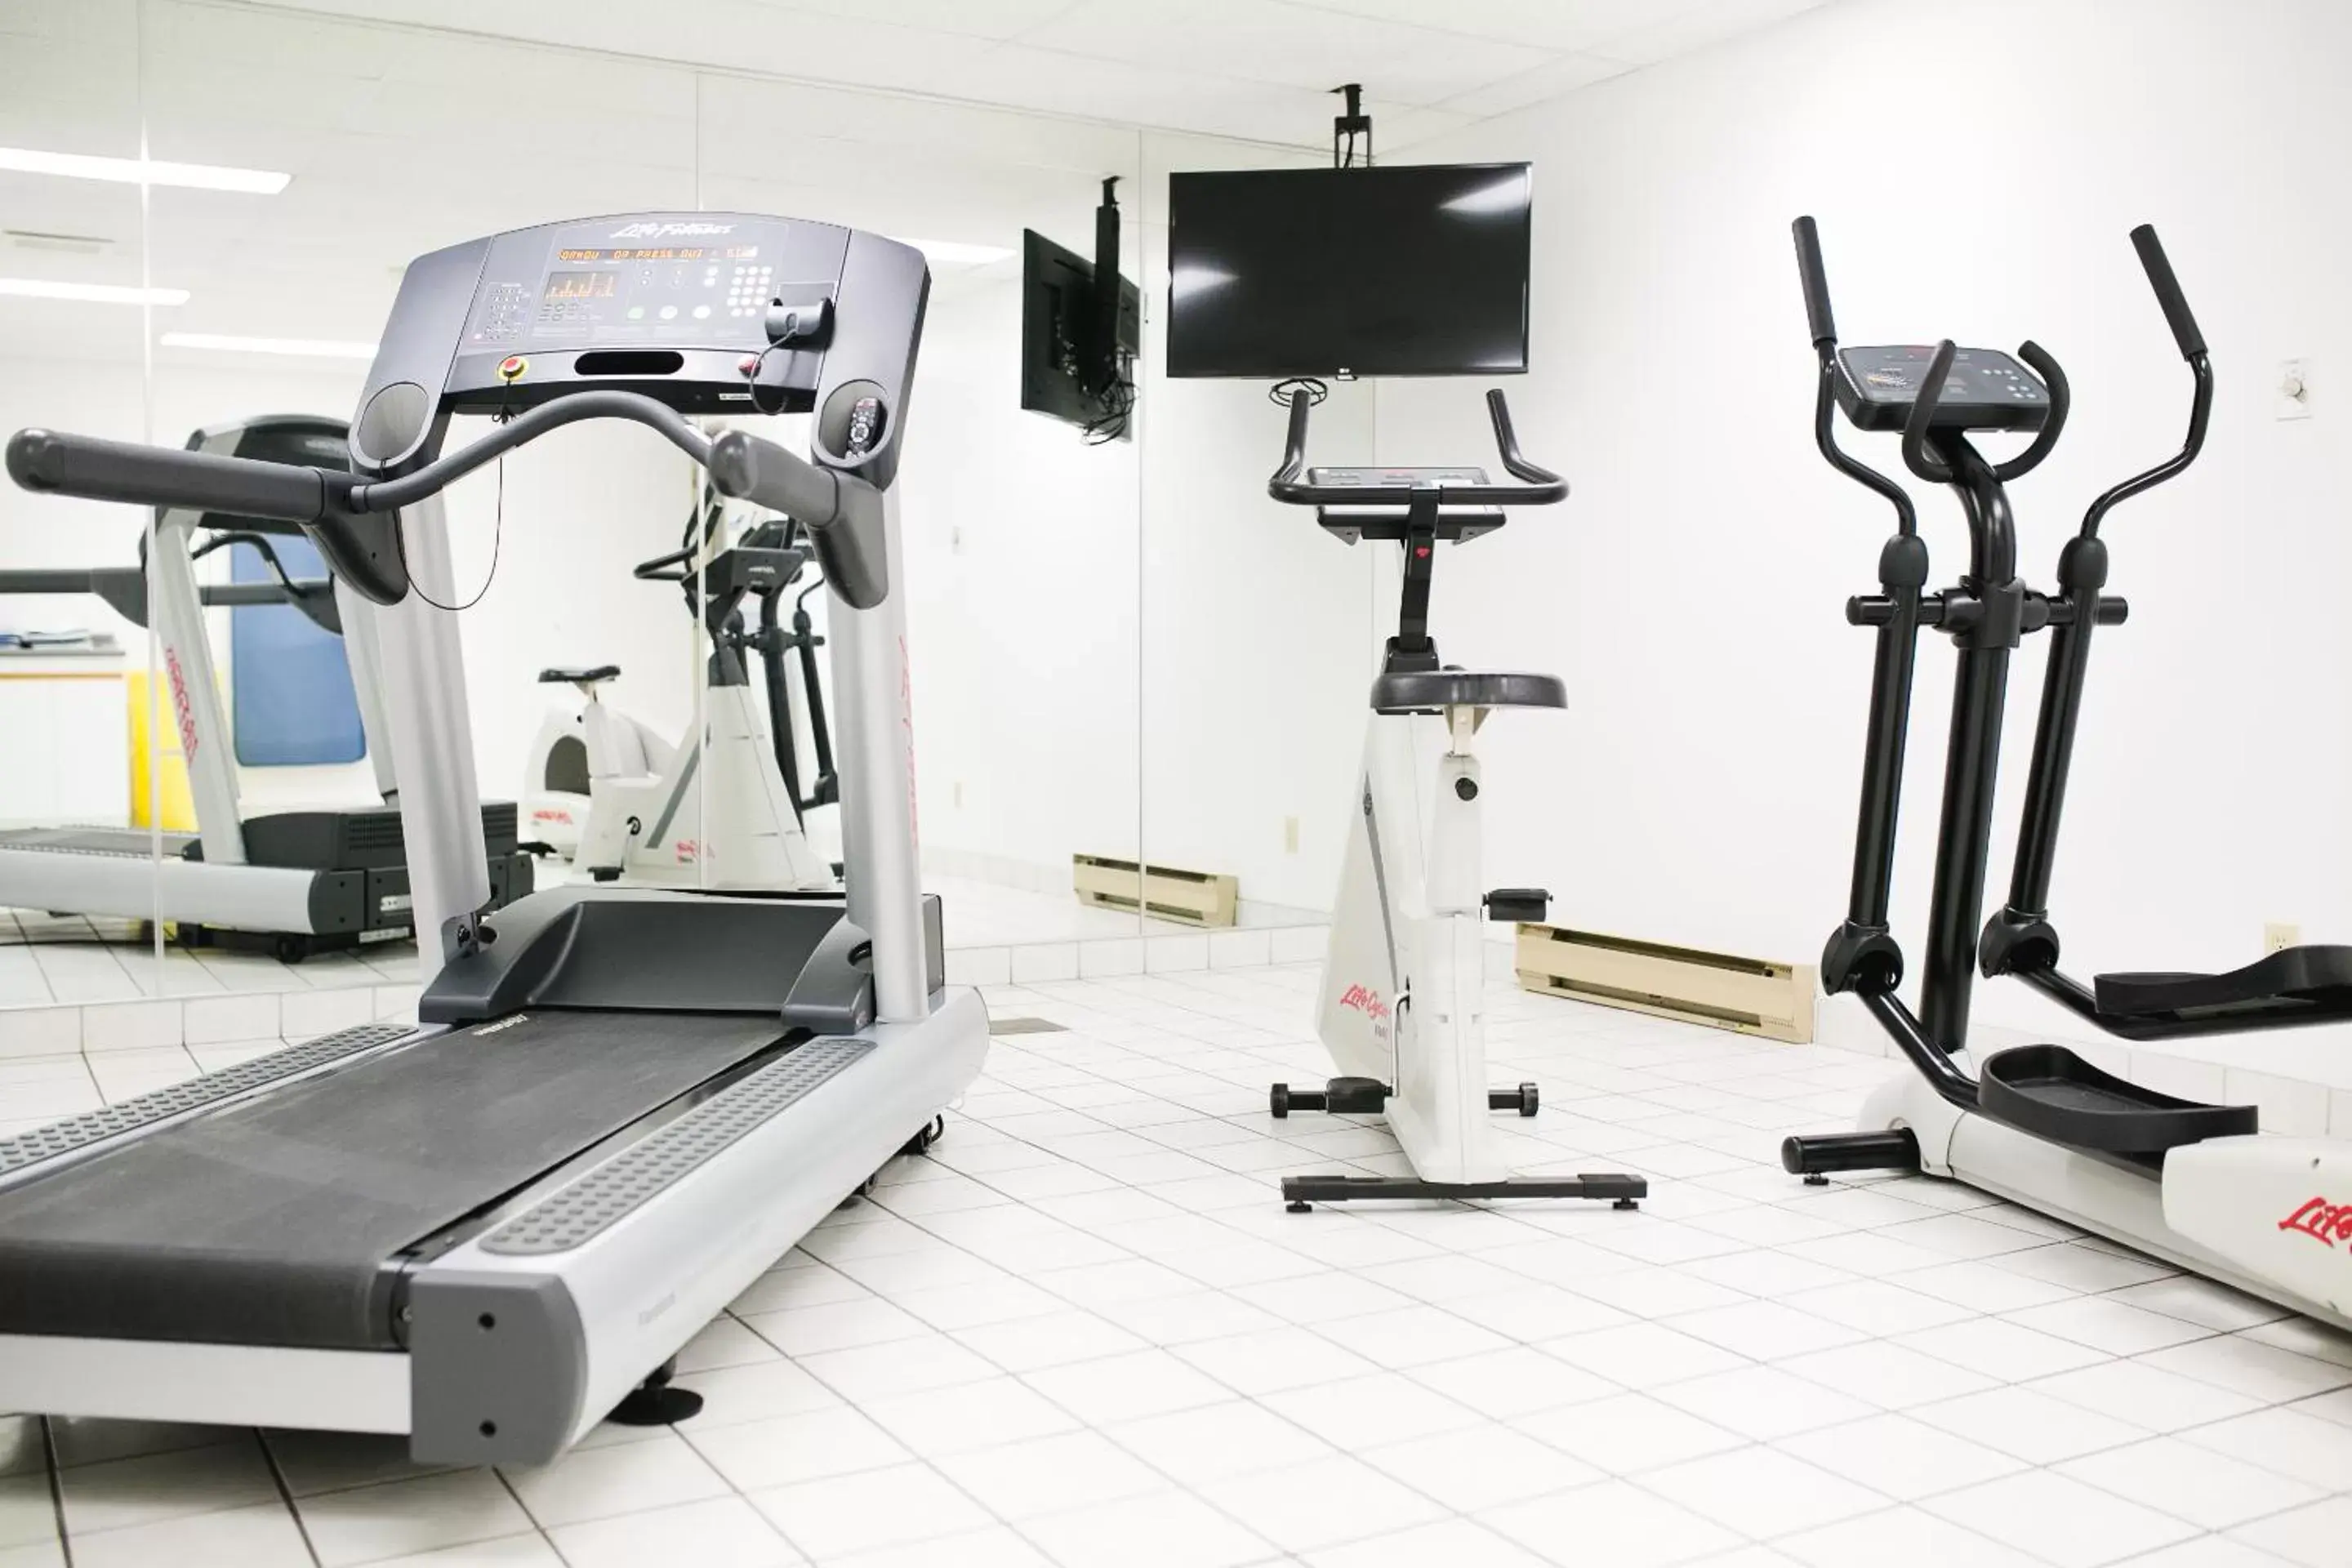 Fitness centre/facilities, Fitness Center/Facilities in Victoria Inn Flin Flon